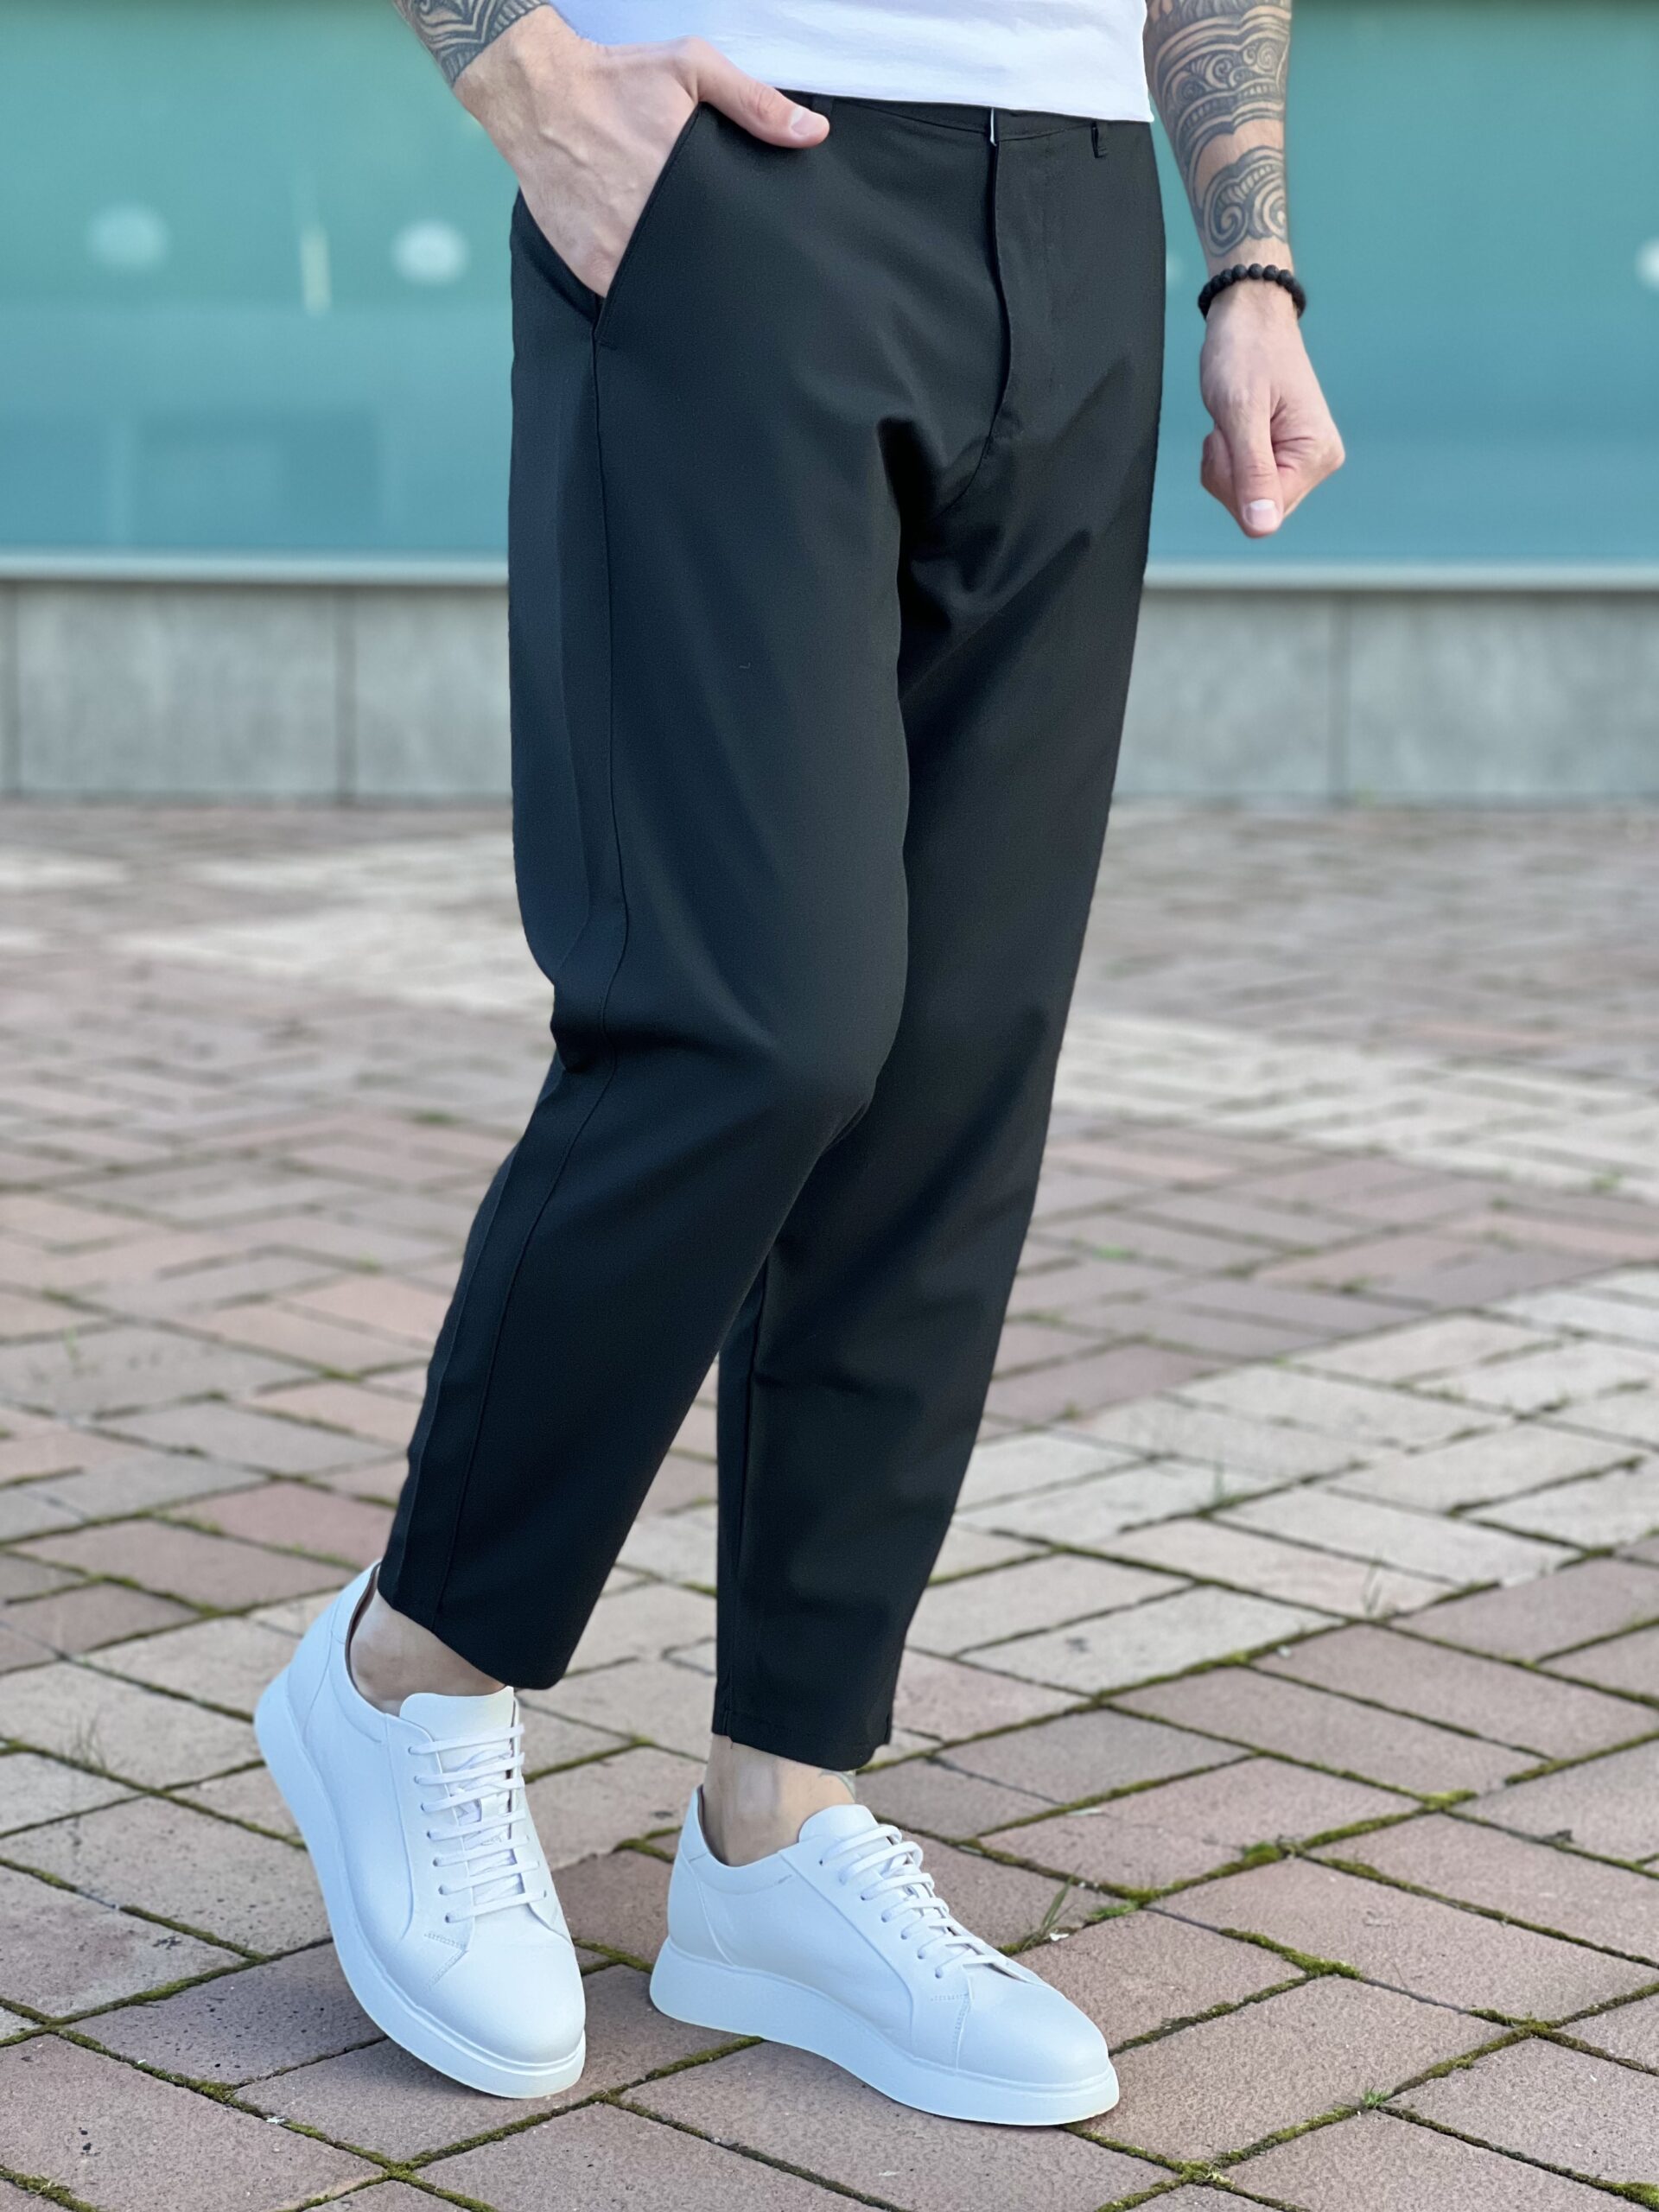 Стильные мужские брюки черного цвета. Арт.: 4950 – купить в магазине мужскойодежды Smartcasuals